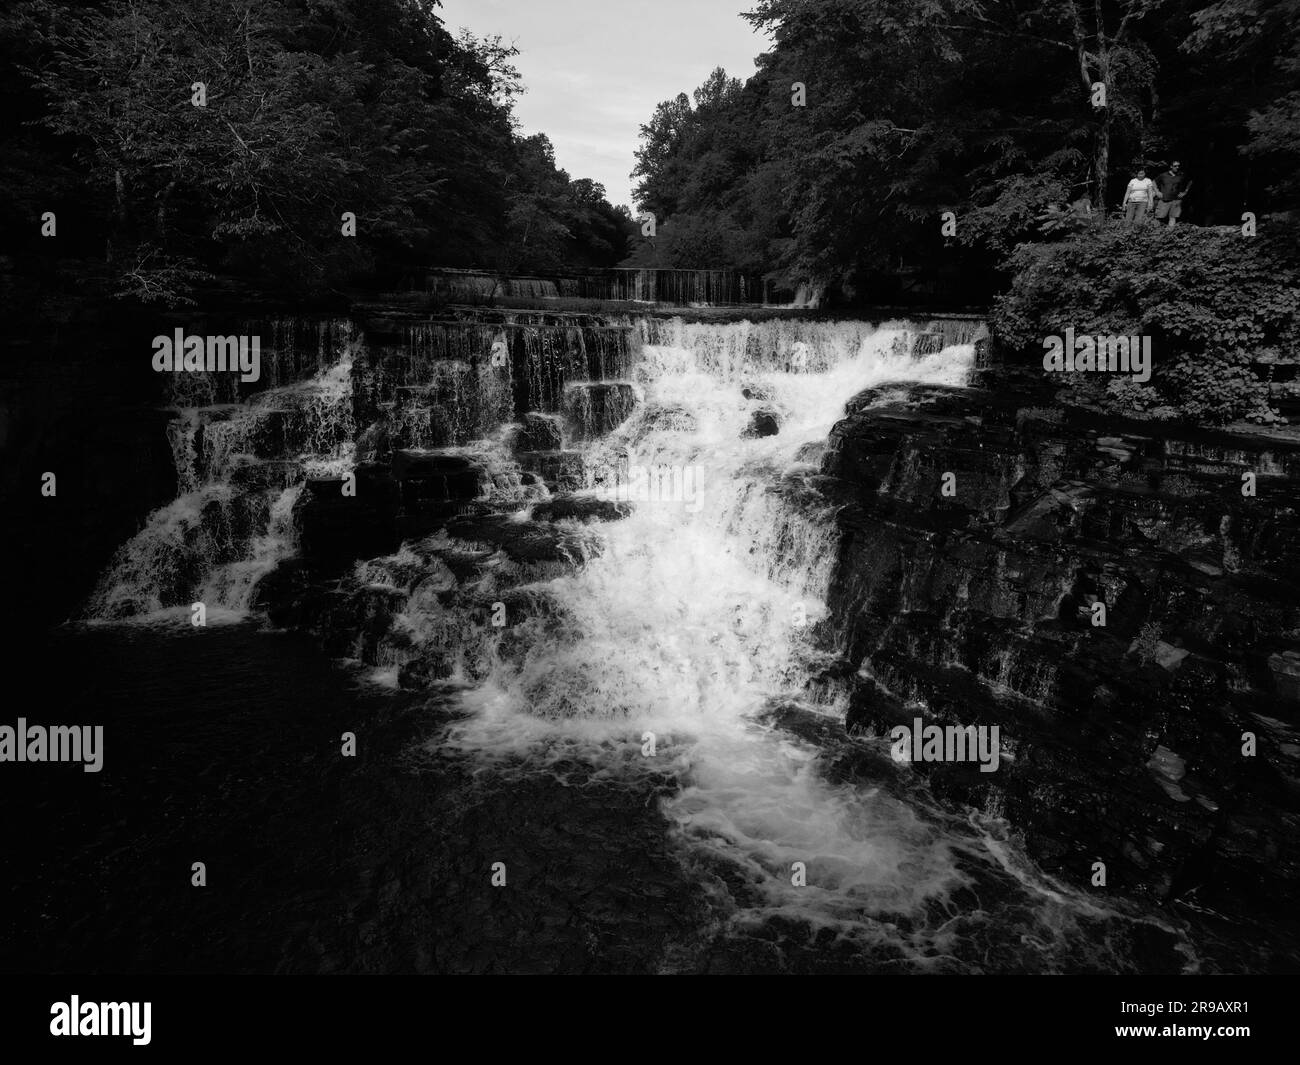 Uno scatto in scala di grigi di una splendida cascata circondata da alberi Foto Stock